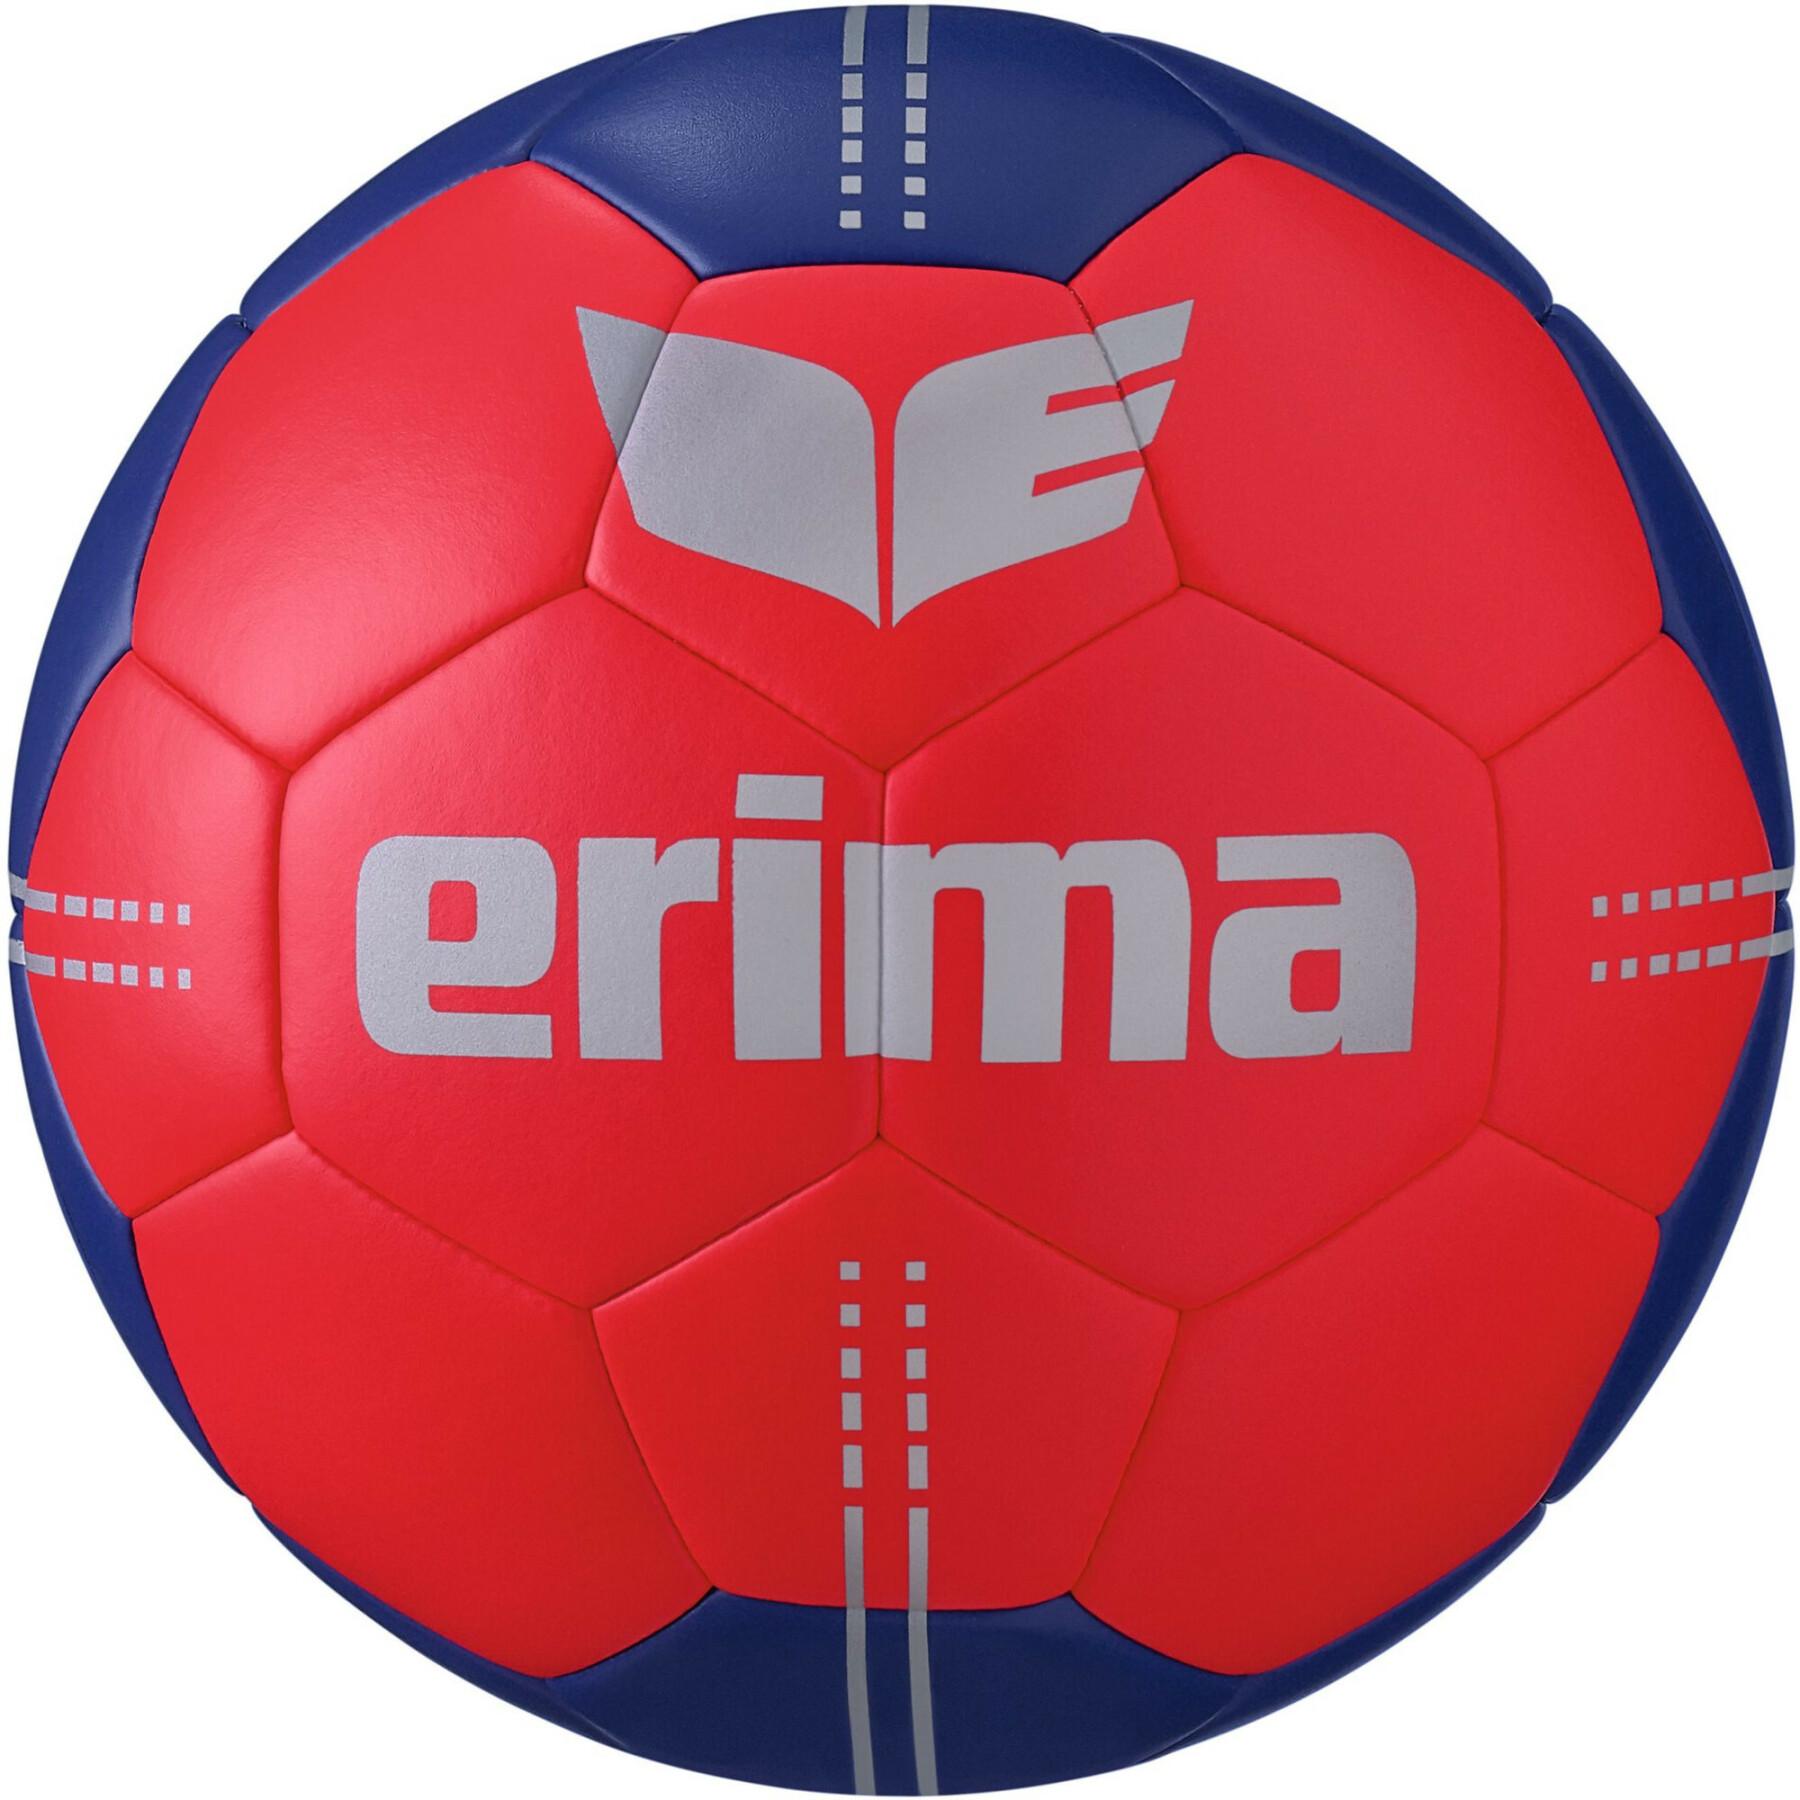 Ballong Erima Pure Grip No. 3 Hybrid